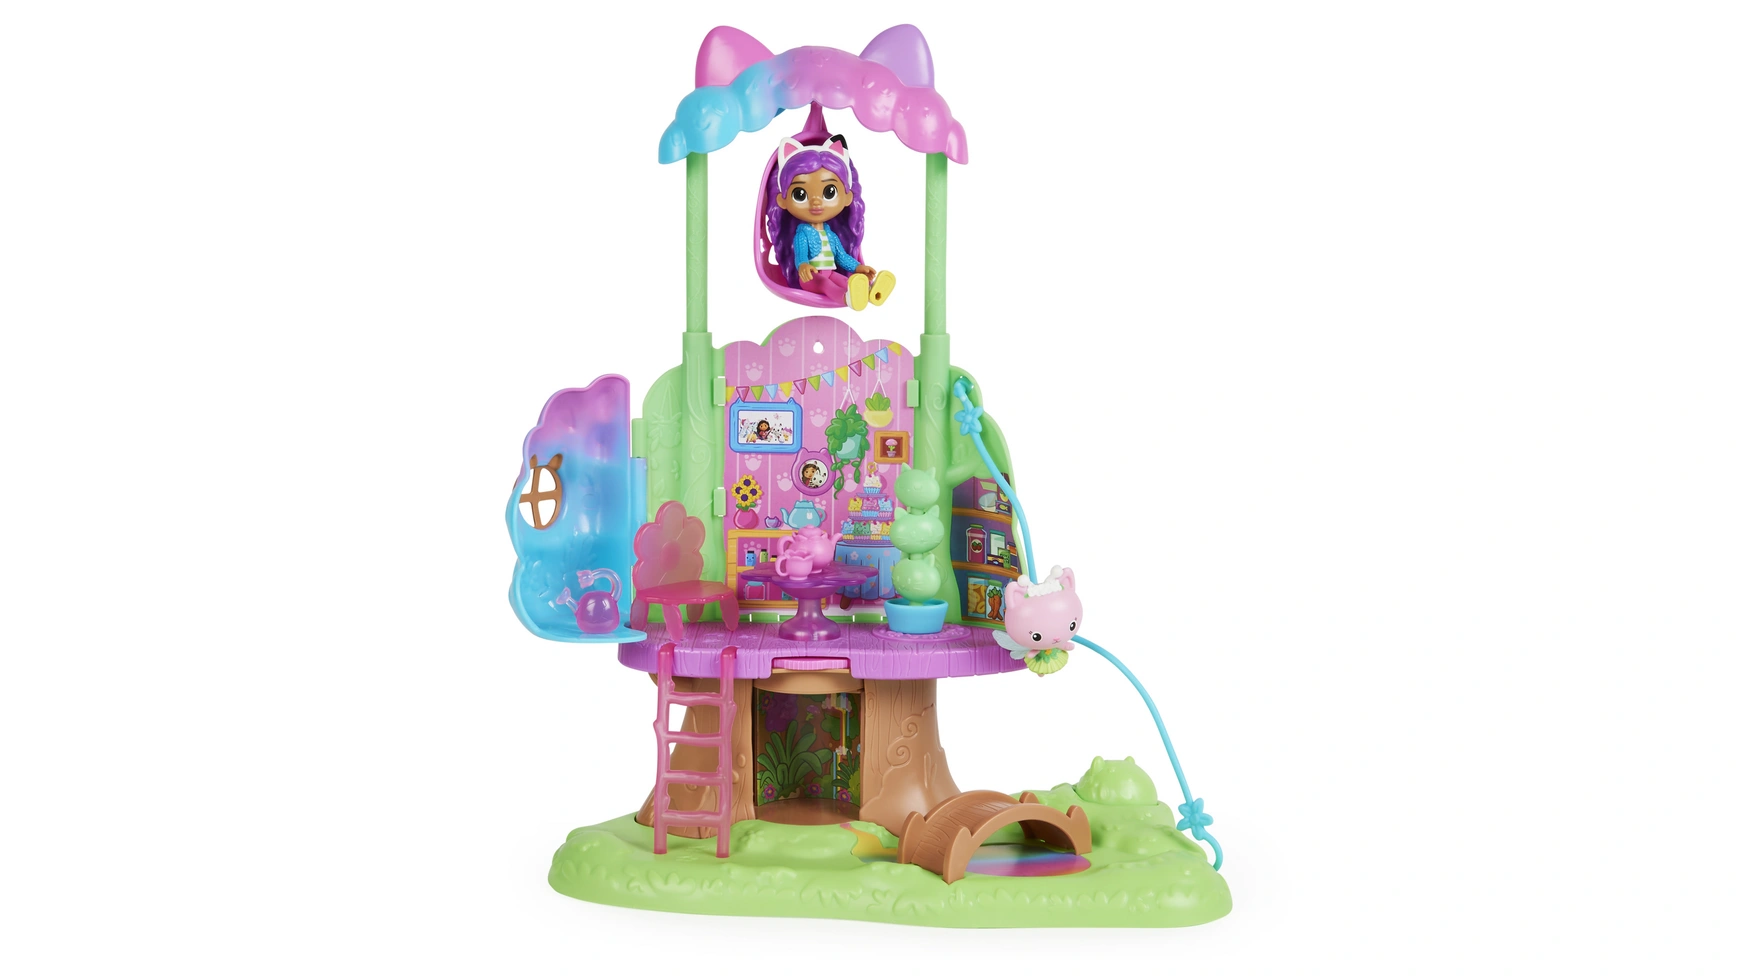 Gabbys Dollhouse Spin Master Садовый игровой набор Kitty Fairy трансформируемый домик на дереве с фигуркой Габби и кошки набор для творчества spin master cool maker большой гоу глэм 2 0 6062239